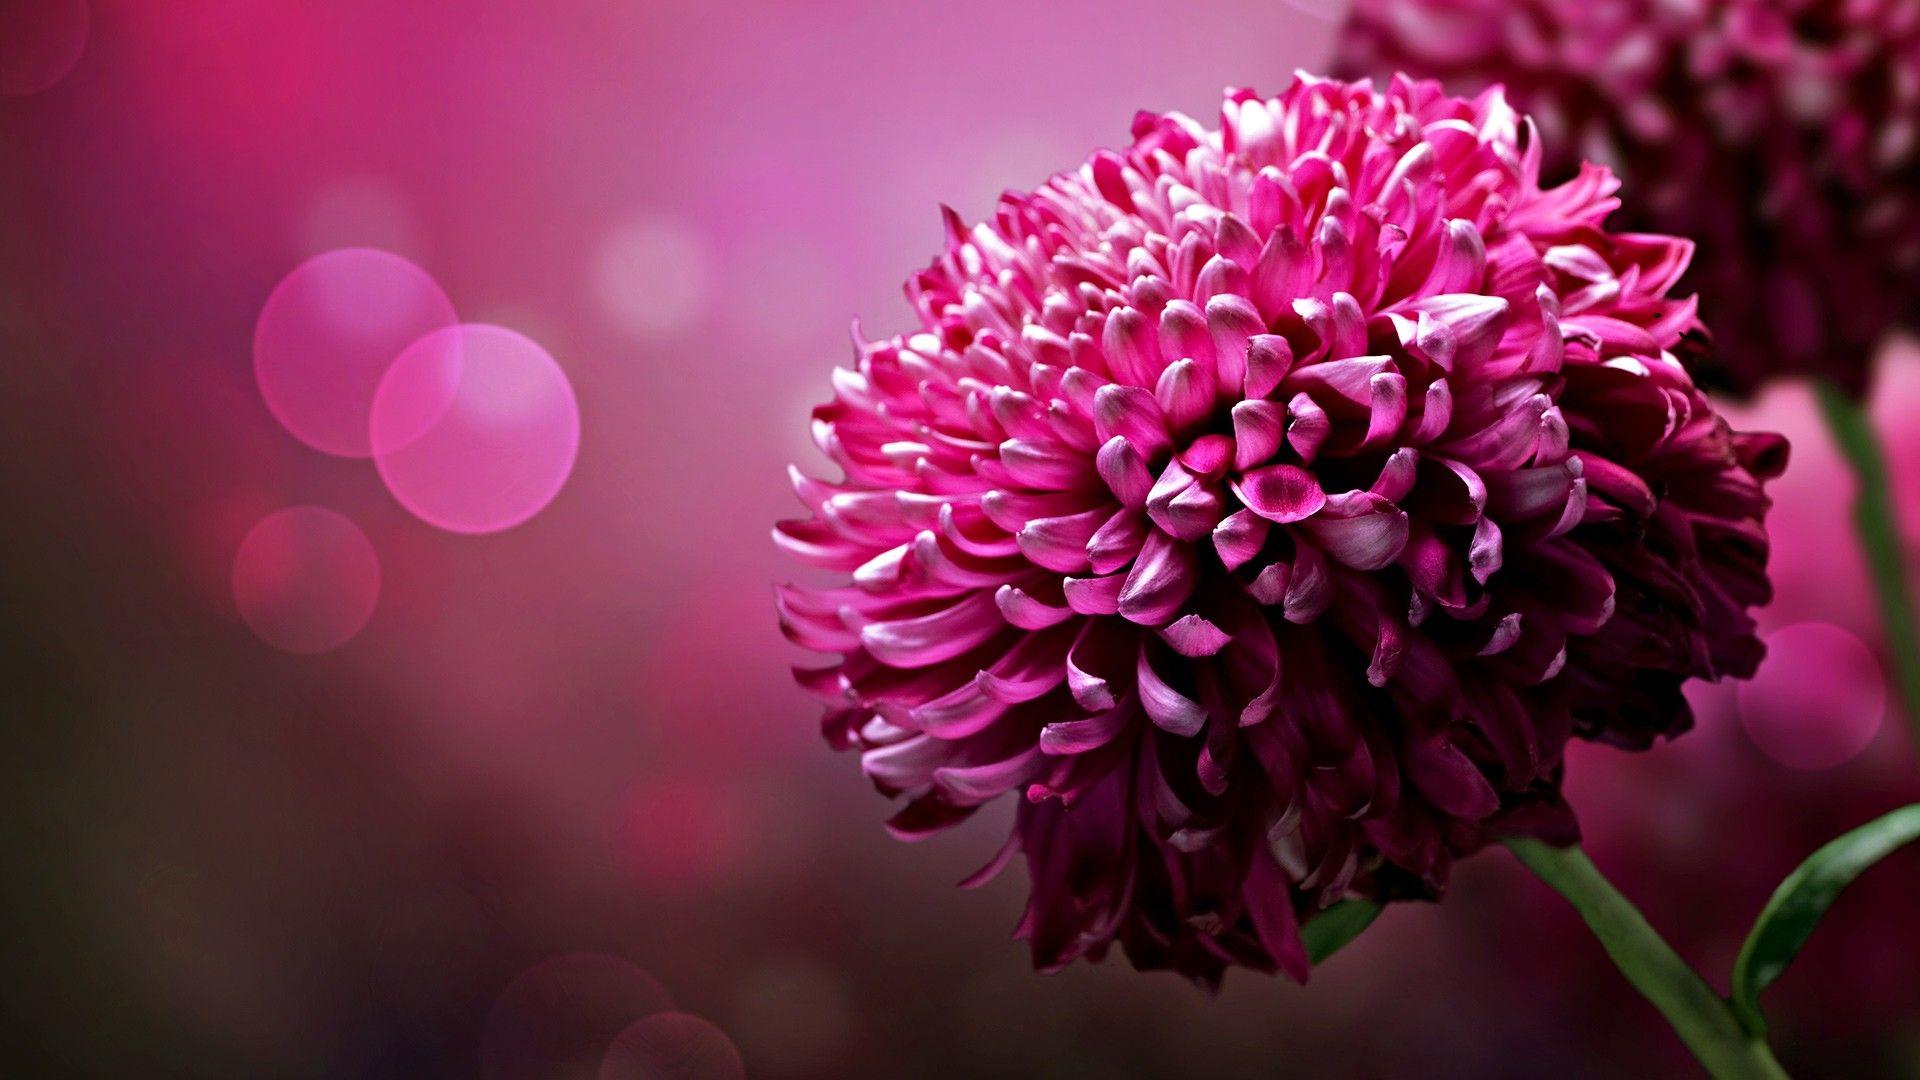 Download Latest Wallpaper Of Flowers HD Beautiful Flower For Desktop